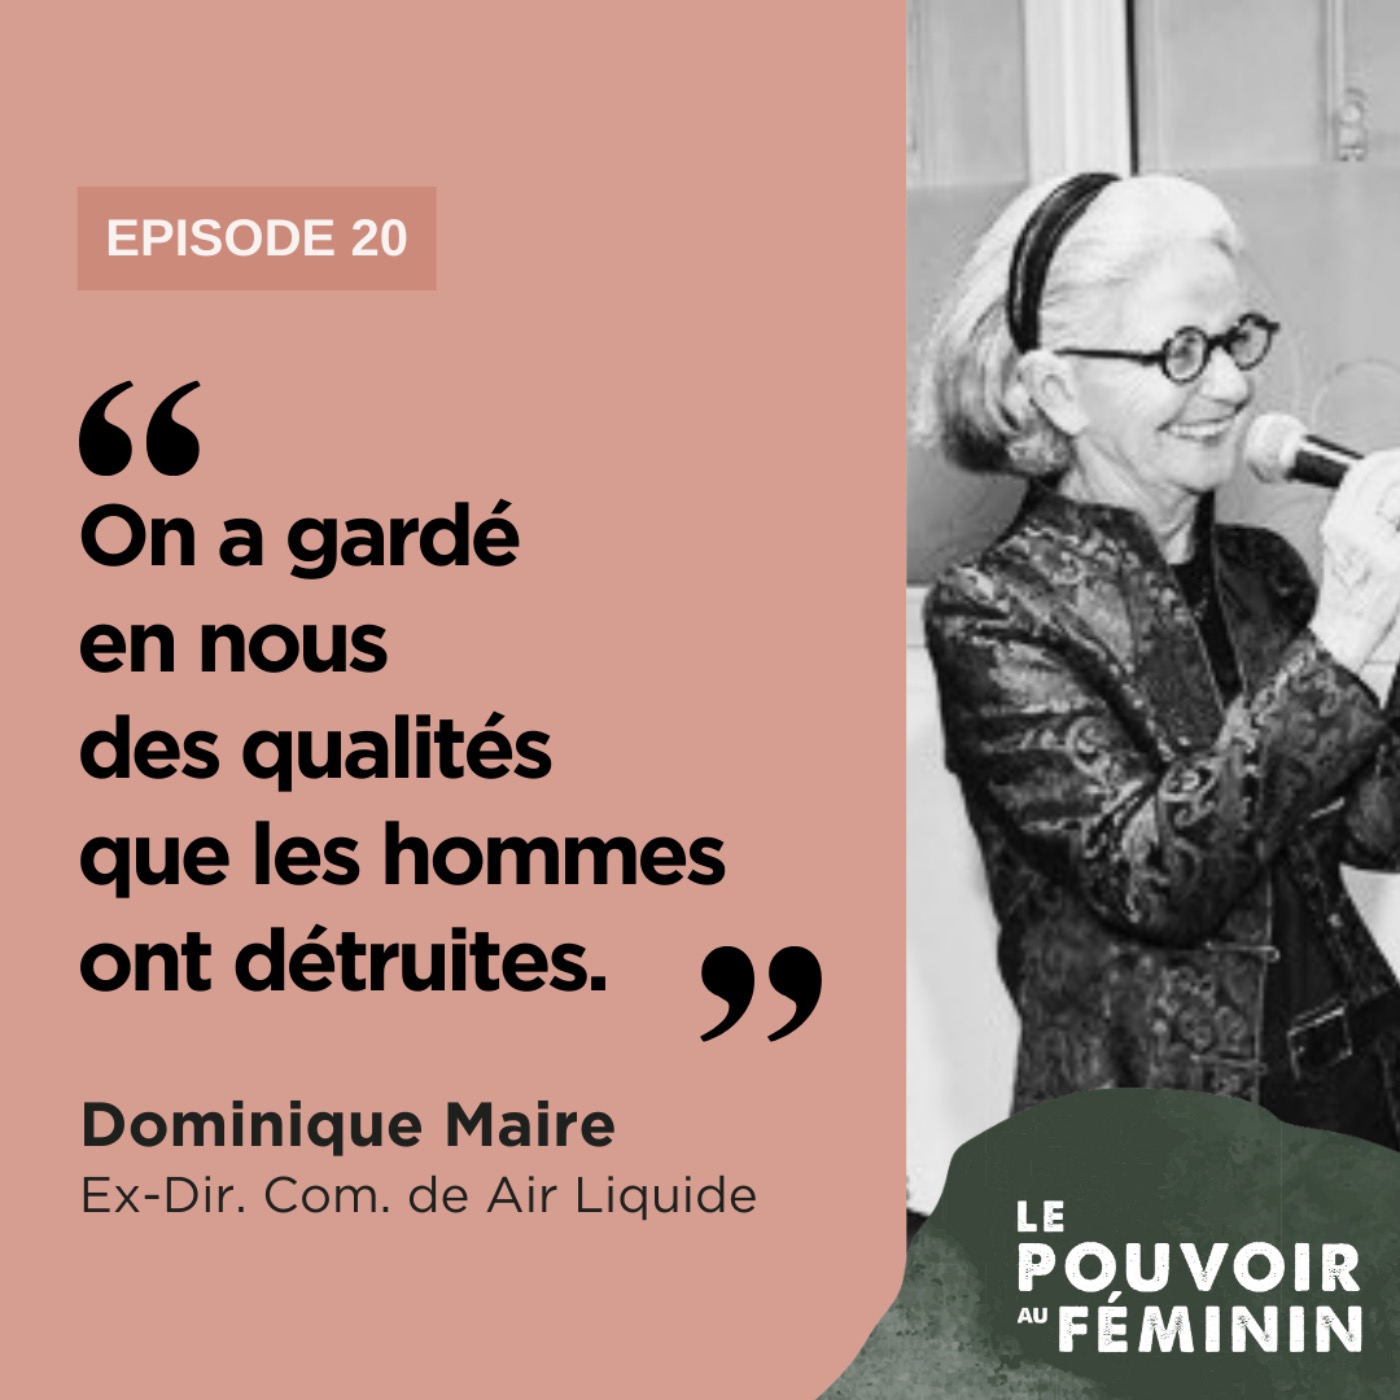 Dominique Maire, Ex-Dir. Com. de Air Liquide - "On a gardé en nous des qualités que les hommes ont détruites."